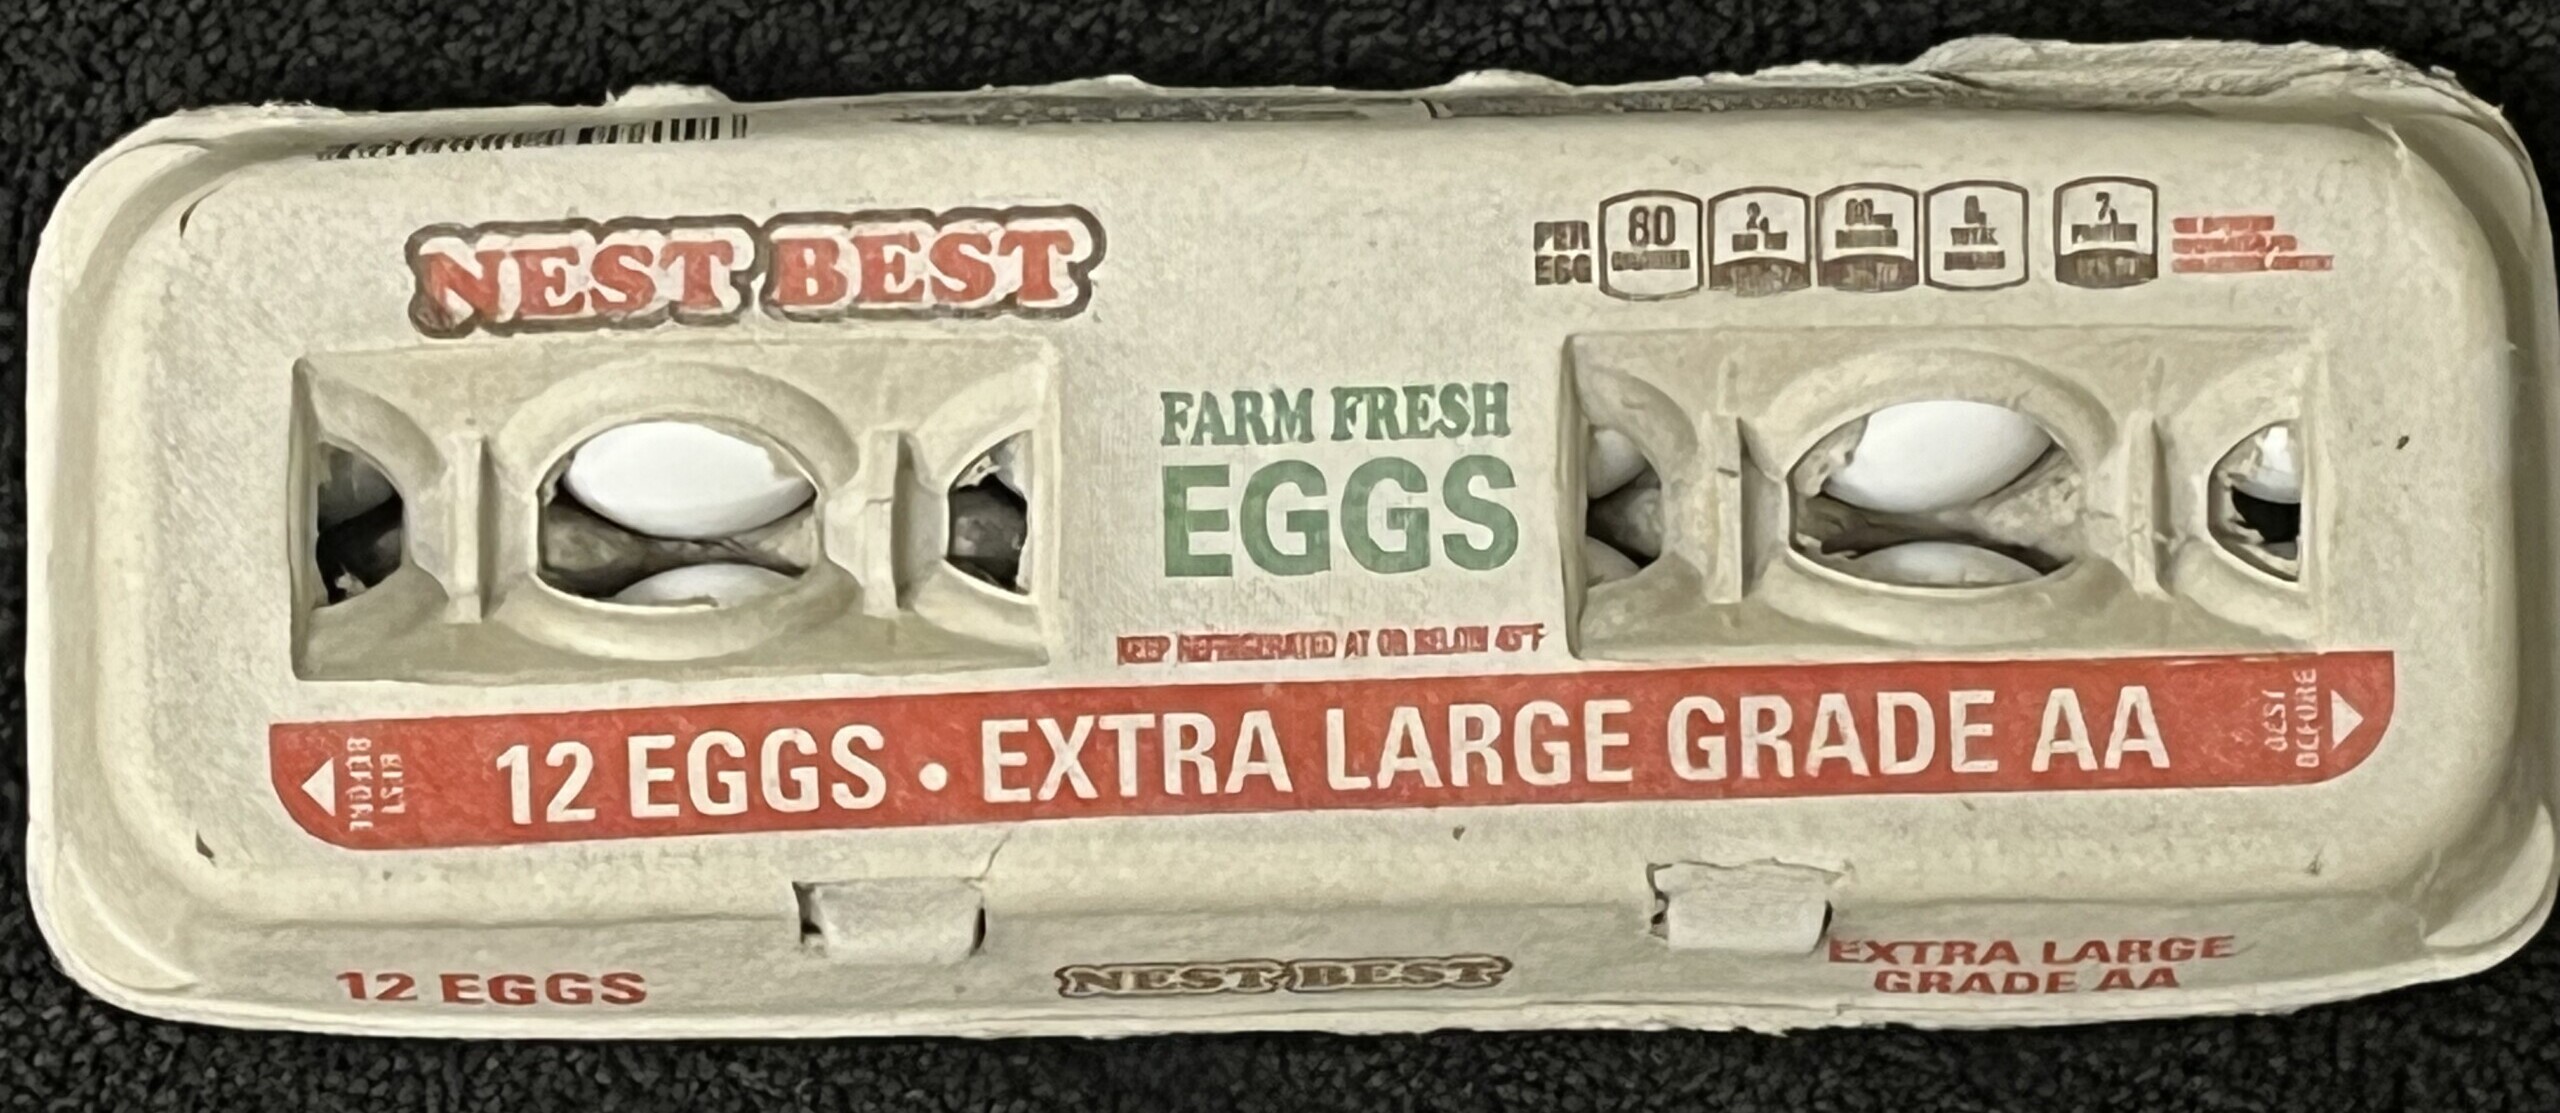 Nest Best Egg varieties